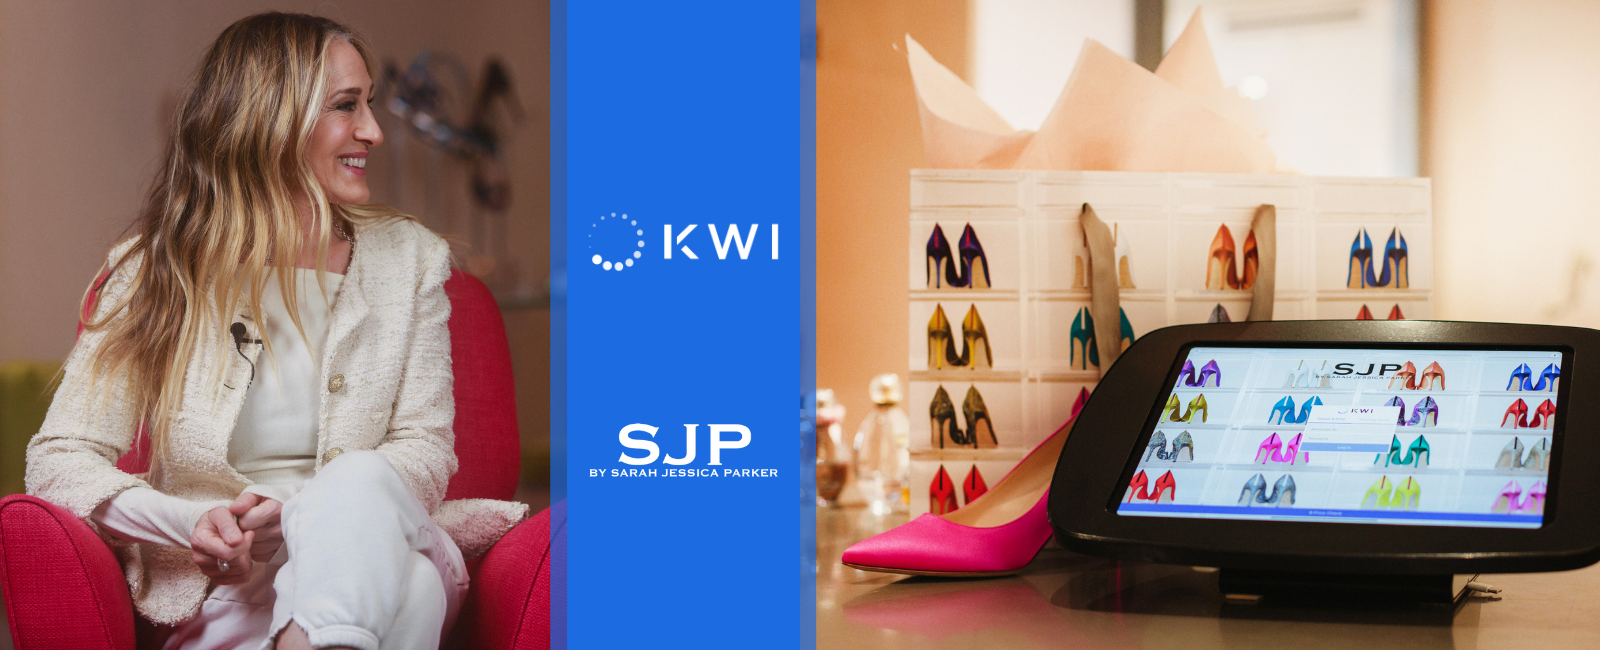 KWI customer - SJP - POS